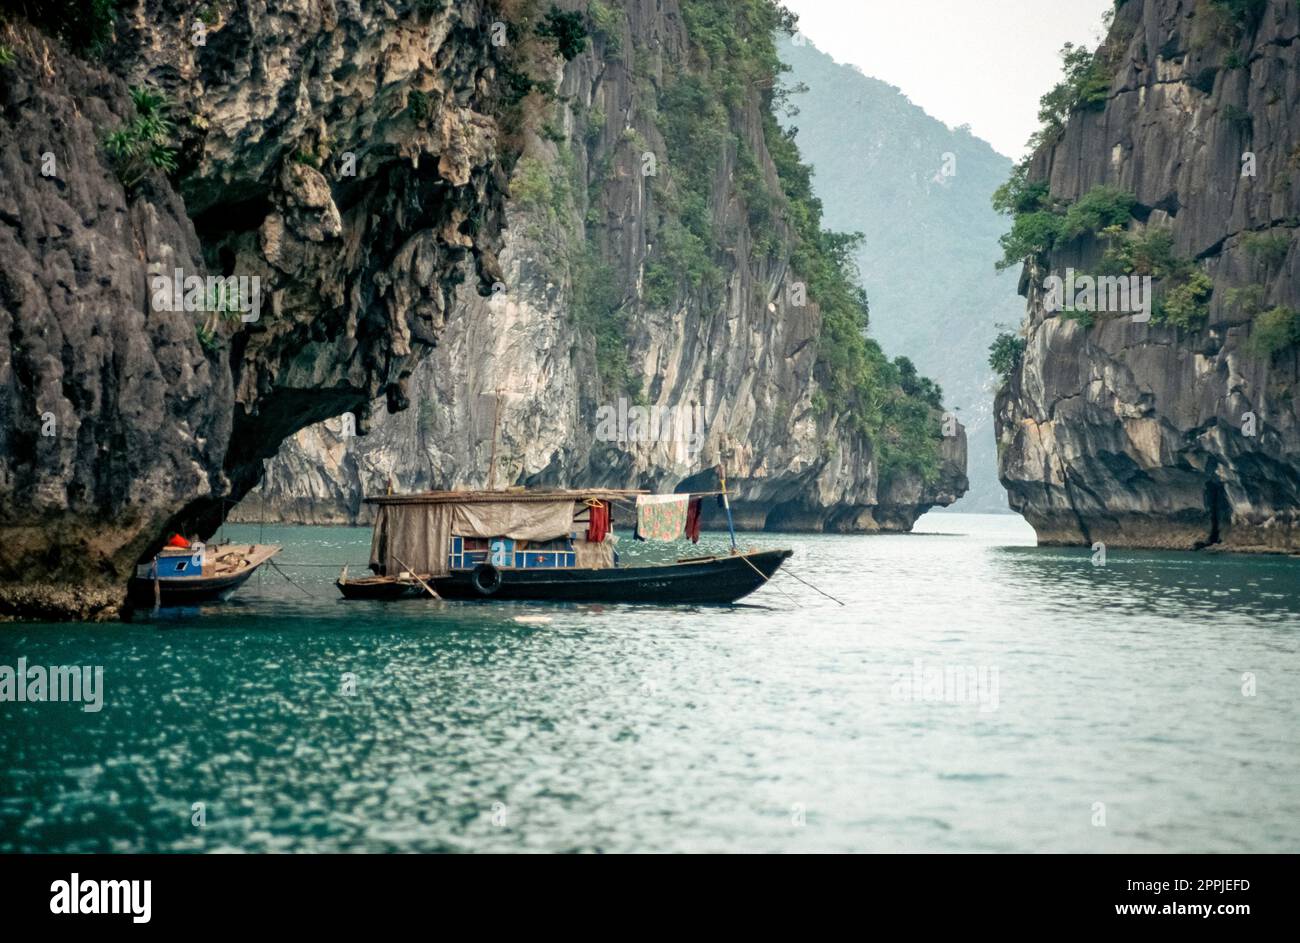 Diapositiva scansionata di fotografia storica a colori della regione costiera del Vietnam nella Baia di ha Long nel Mare della Cina Foto Stock